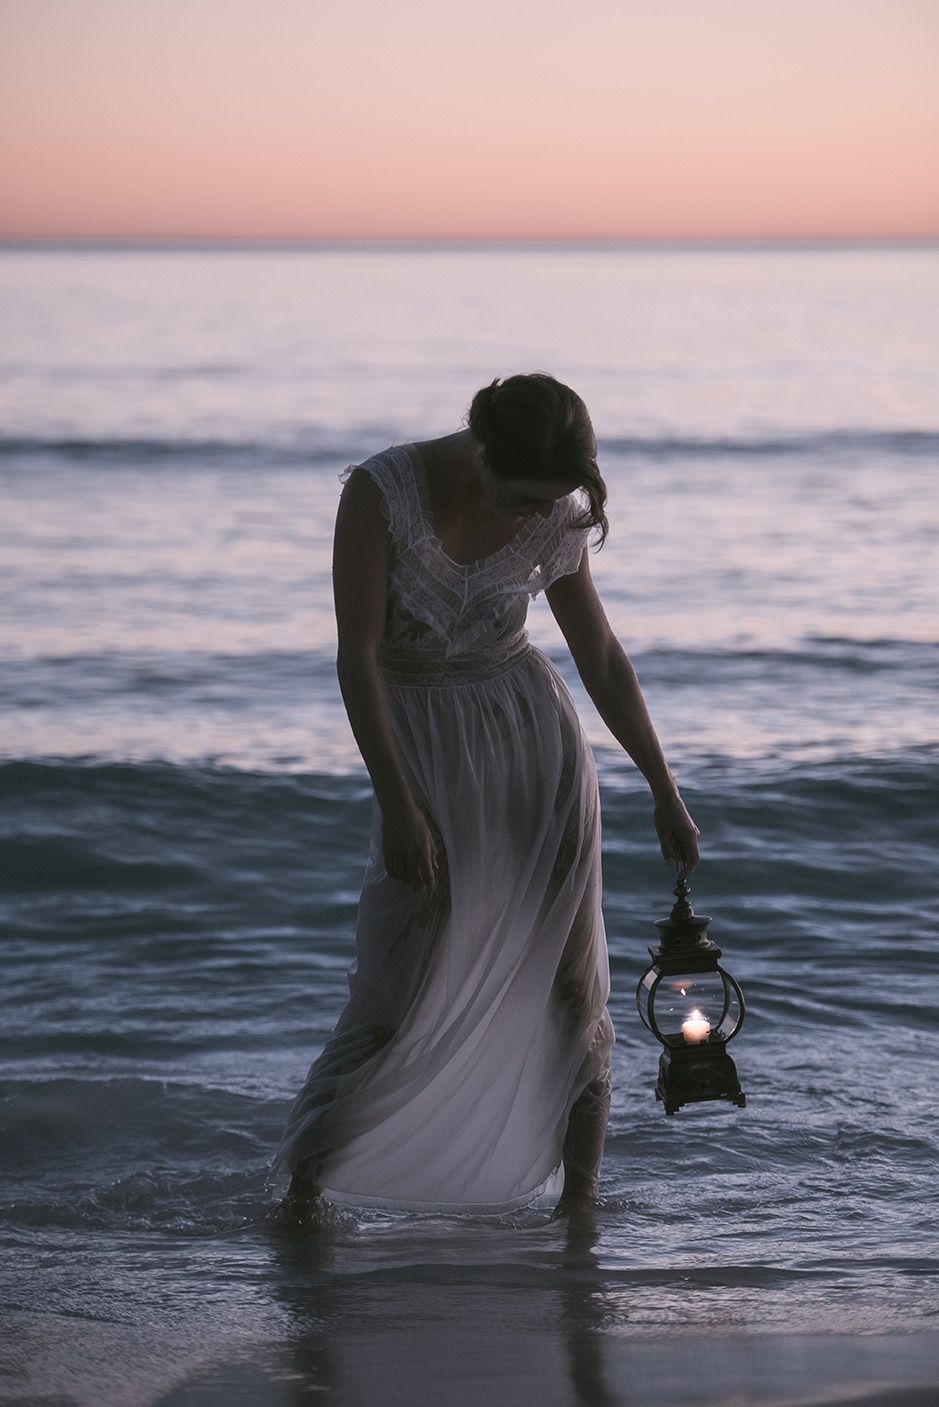 spooky girl on beach with a lantern